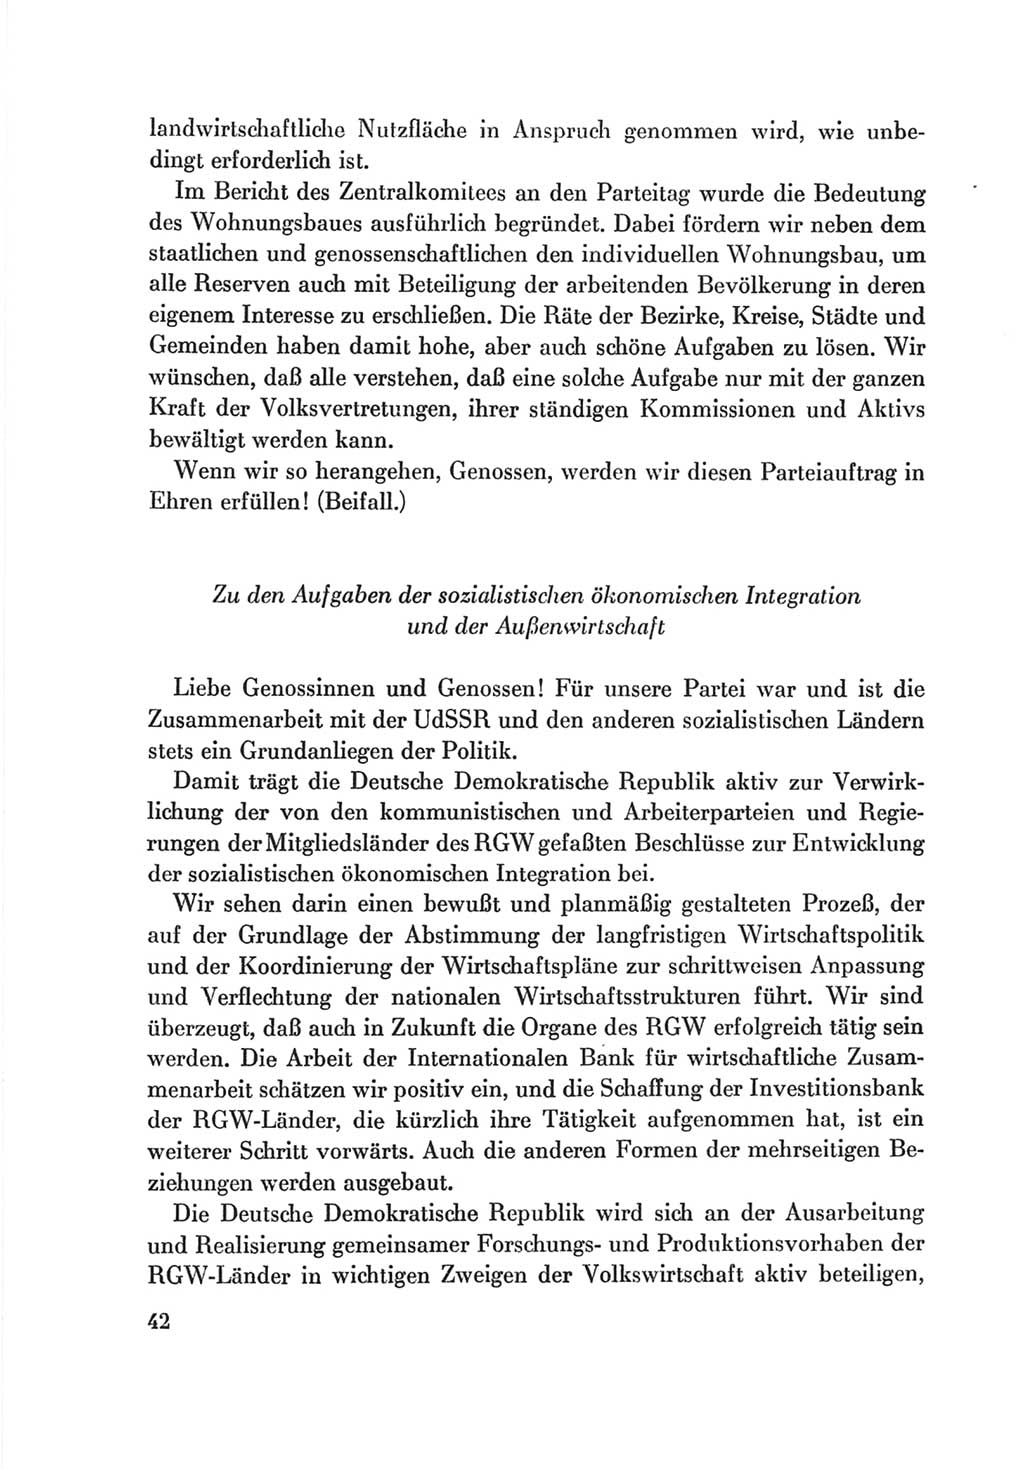 Protokoll der Verhandlungen des Ⅷ. Parteitages der Sozialistischen Einheitspartei Deutschlands (SED) [Deutsche Demokratische Republik (DDR)] 1971, Band 2, Seite 42 (Prot. Verh. Ⅷ. PT SED DDR 1971, Bd. 2, S. 42)